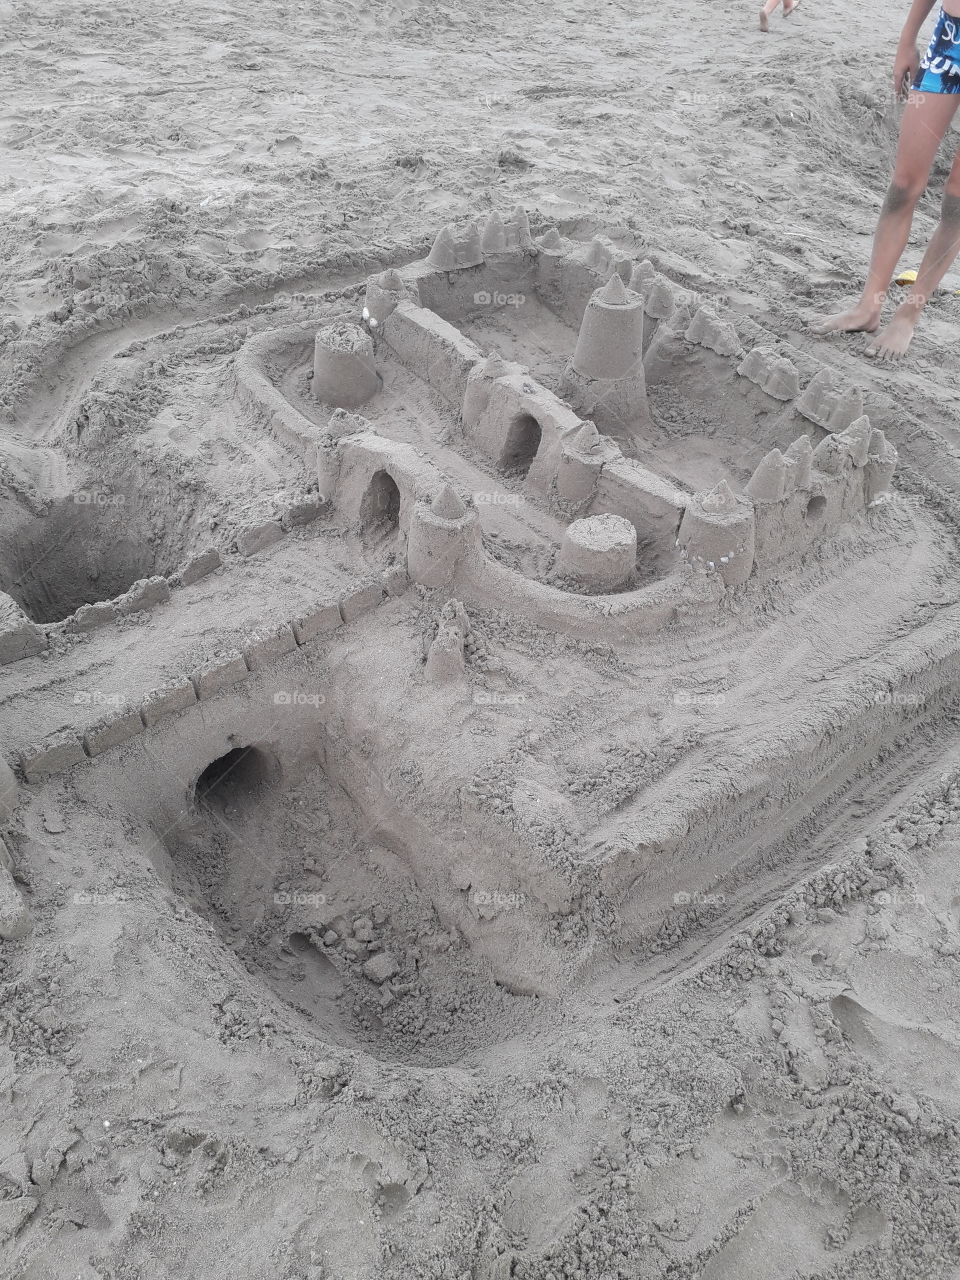 château de sable